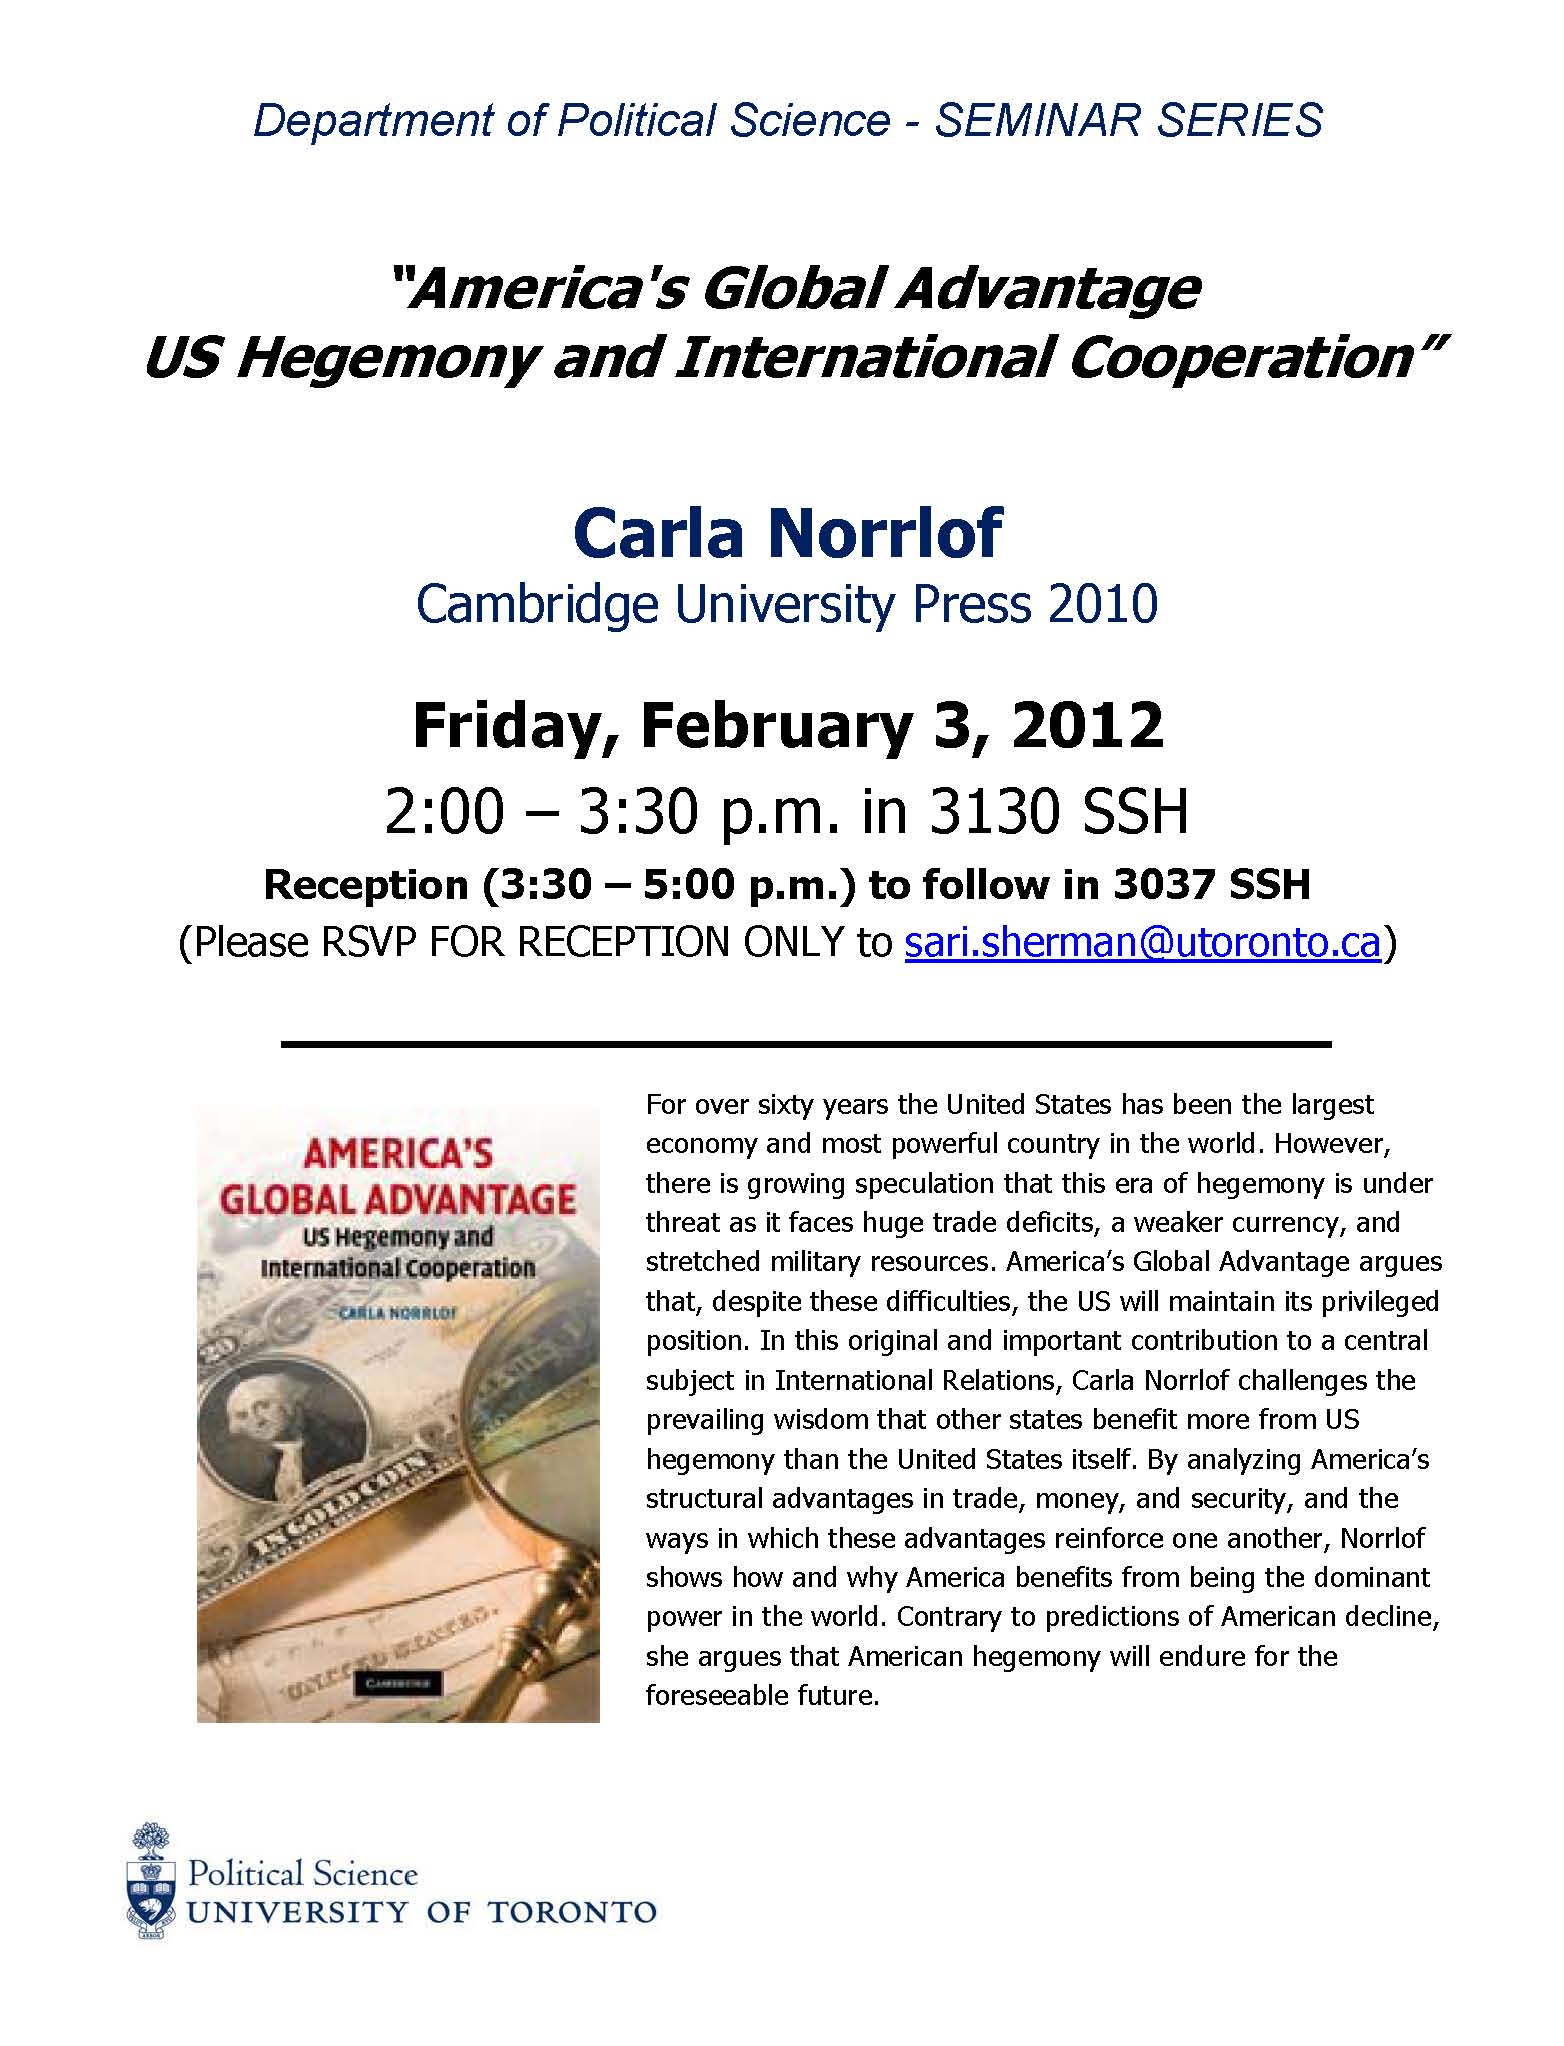 Seminar Series Poster - Carla Norrlof February 3, 2012